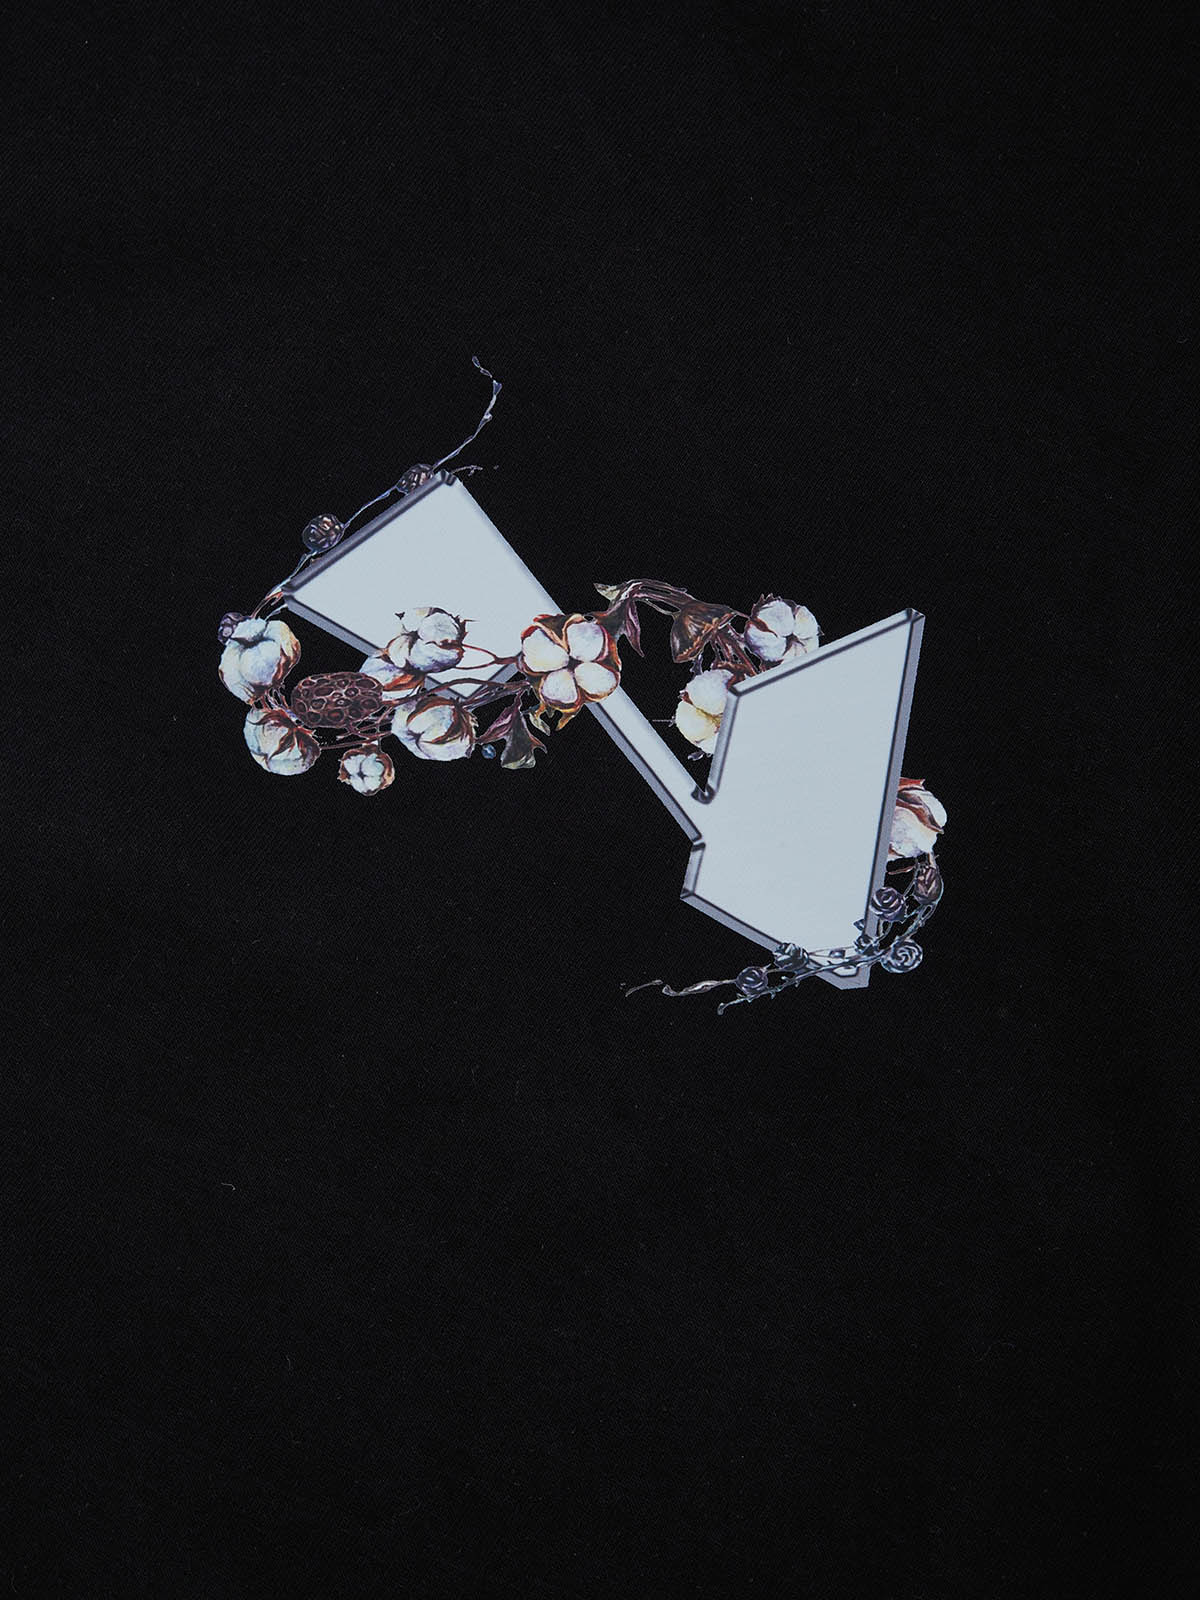 OBSTACLES &amp; DANGERS© The Black Madonna und Baumwoll-Kunst-T-Shirt in Schwarz/Weiß